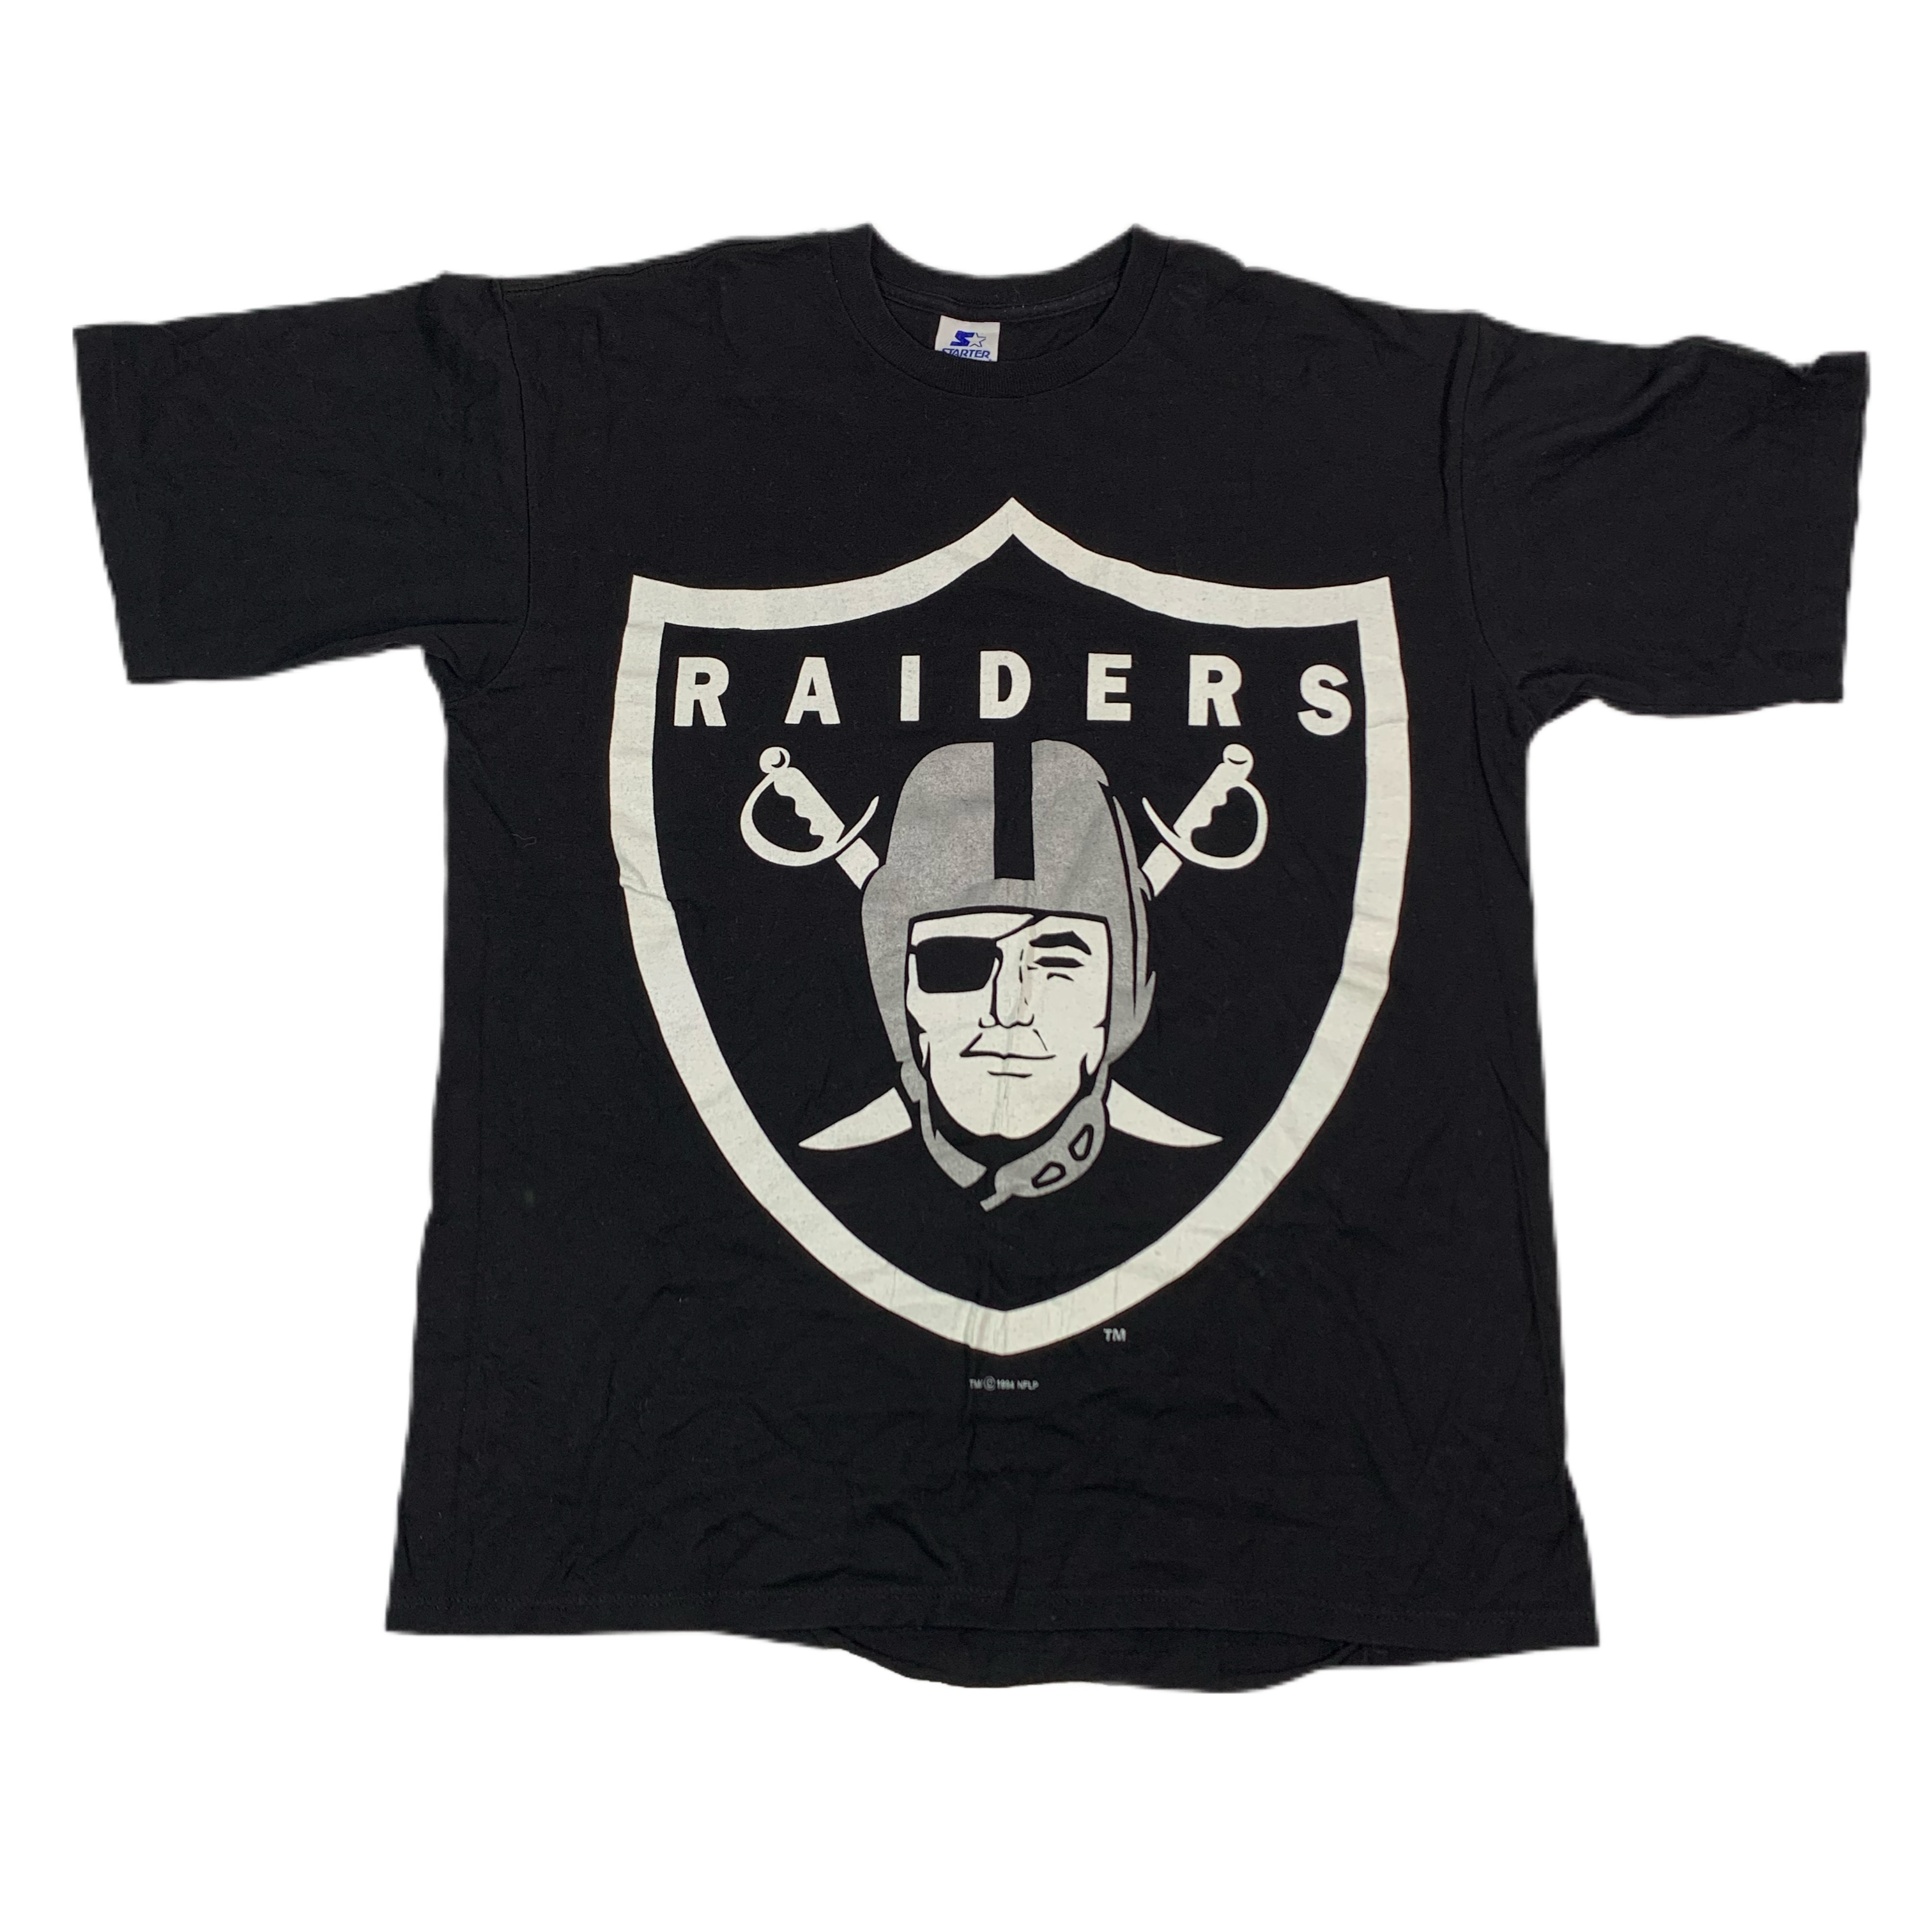 LA Raiders Apparel, LA Raiders Gear, Los Angeles Raiders Merch